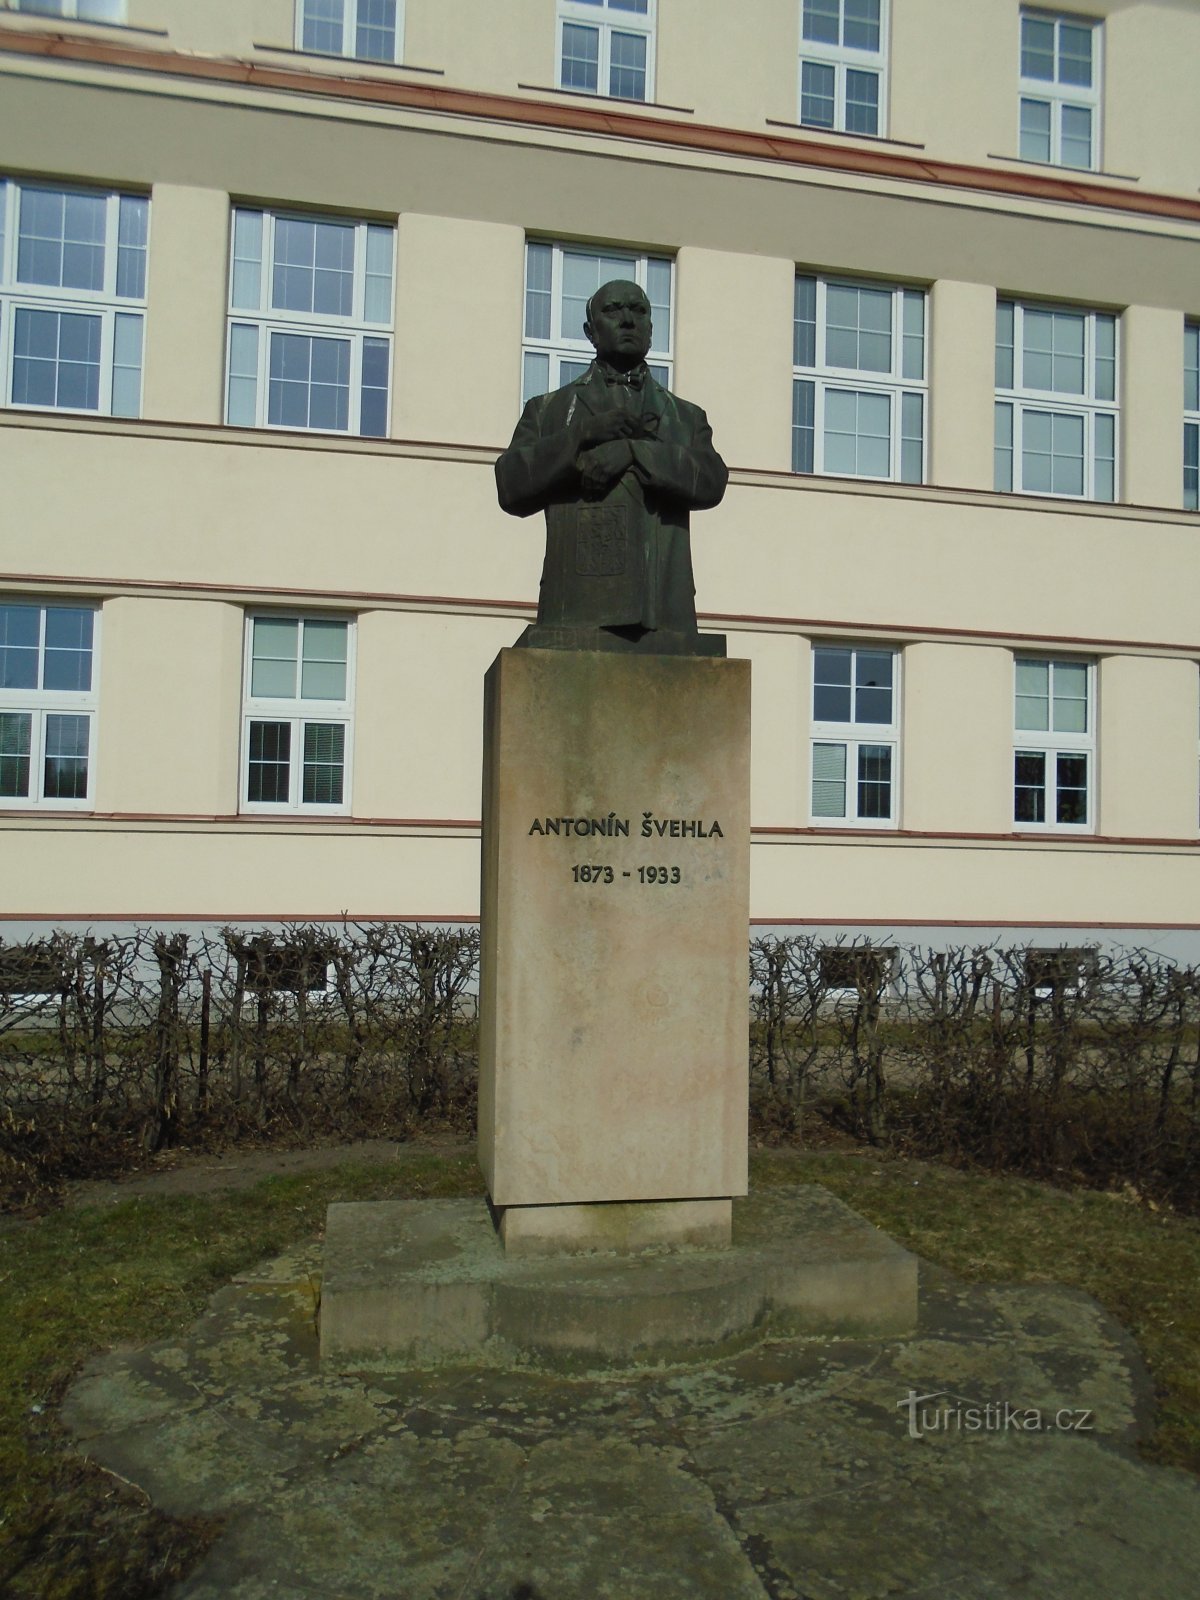 Μνημείο στον Antonín Švehla (Hradec Králové, 4.3.2018 Μαρτίου XNUMX)